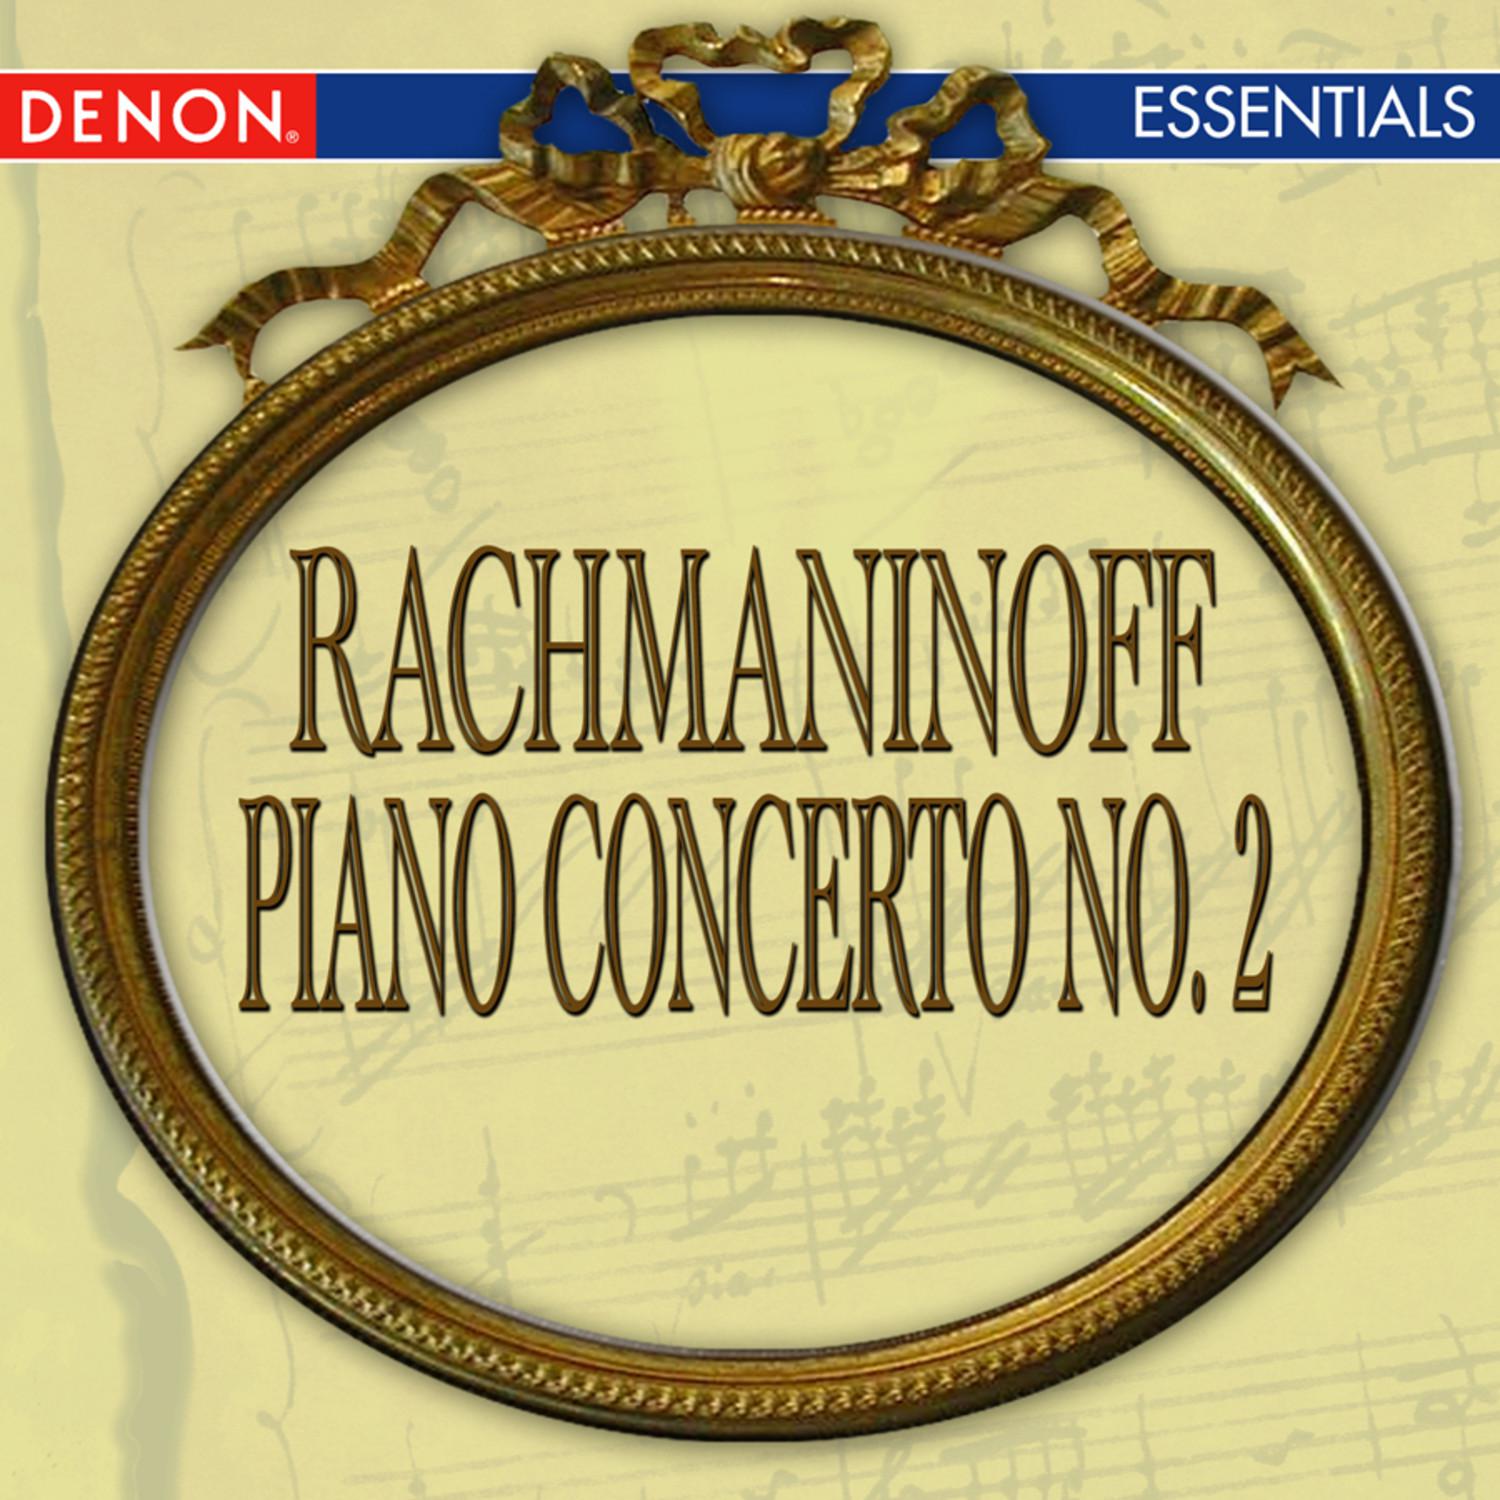 Rachmaninoff: Piano Concerto No. 2